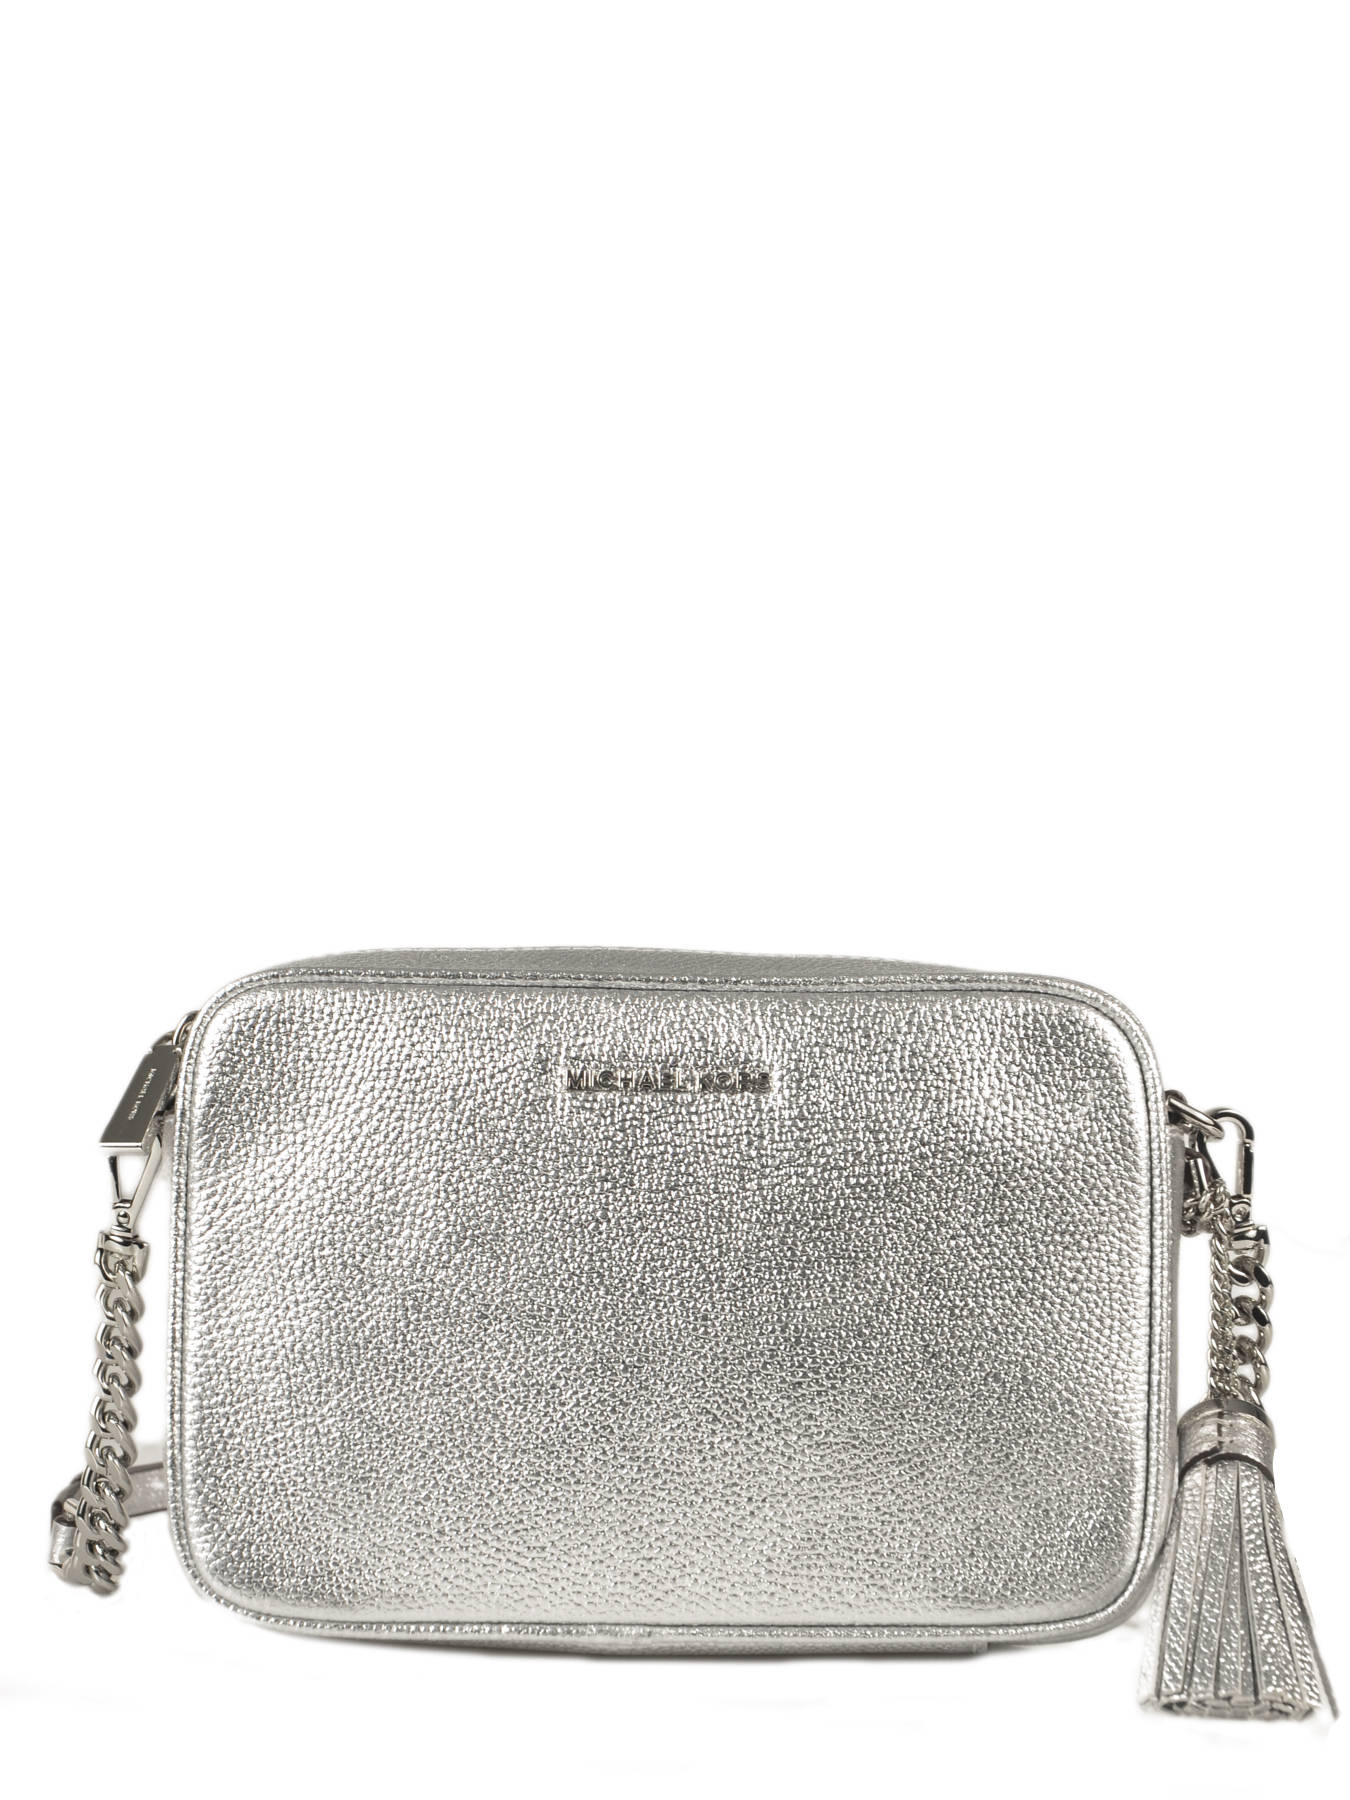 Michael Kors Silver Handbags  ShopStyle